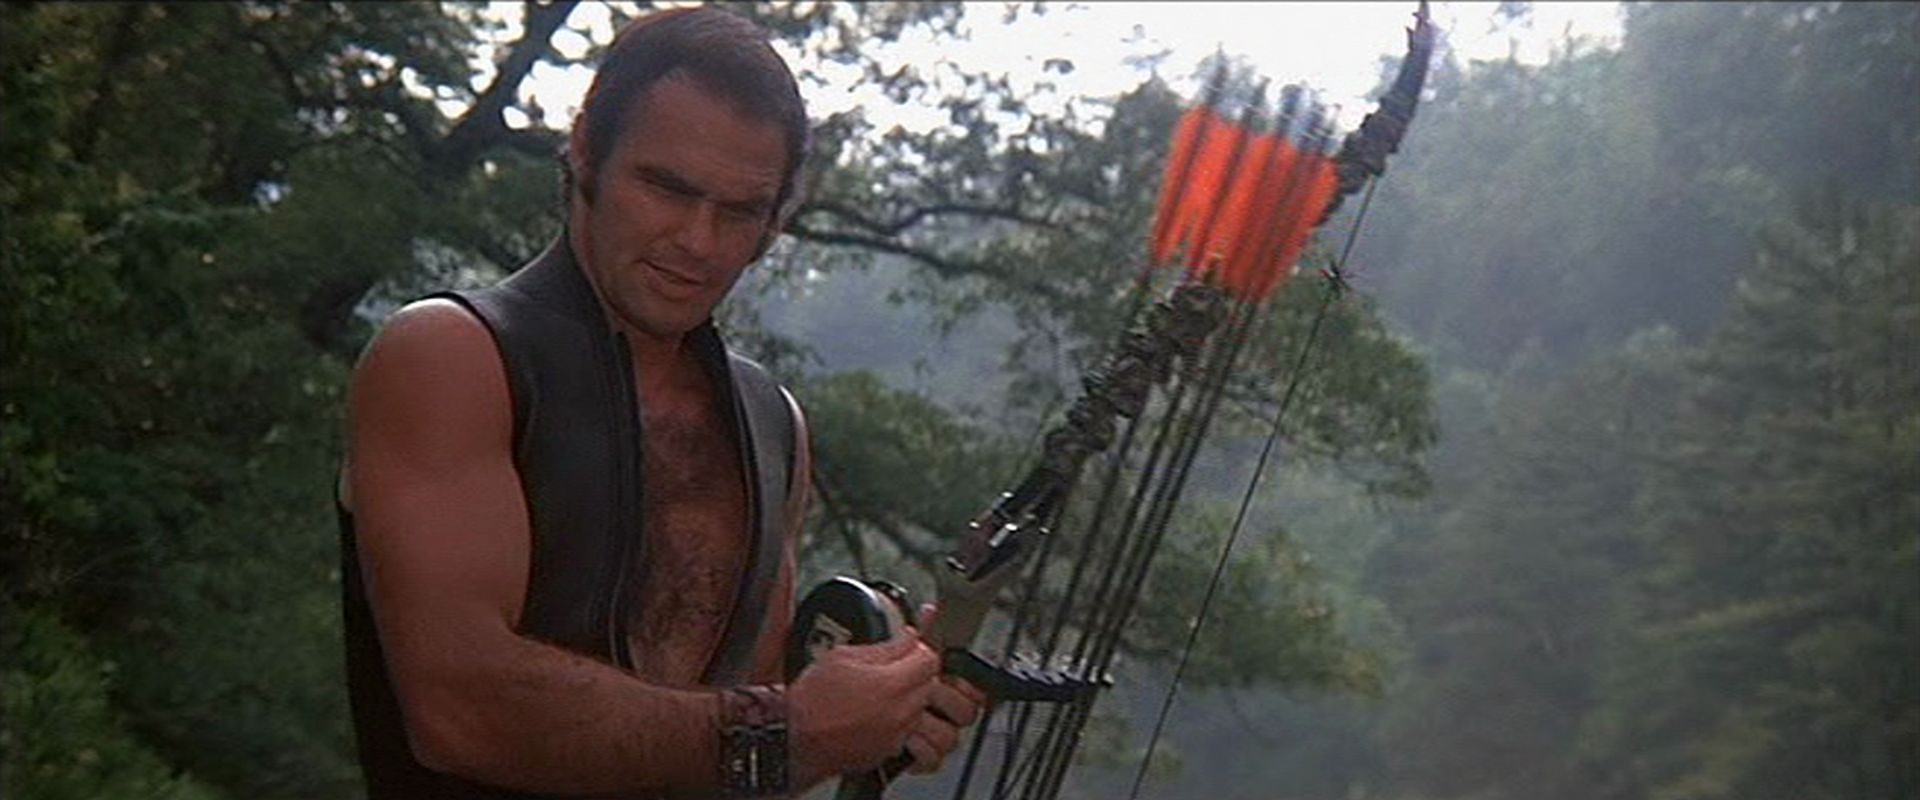 Burt Reynolds in konzentrierter Pose als Abenteurer in ärmelloser Neoprenweste und mit Bogen in der Wildnis.